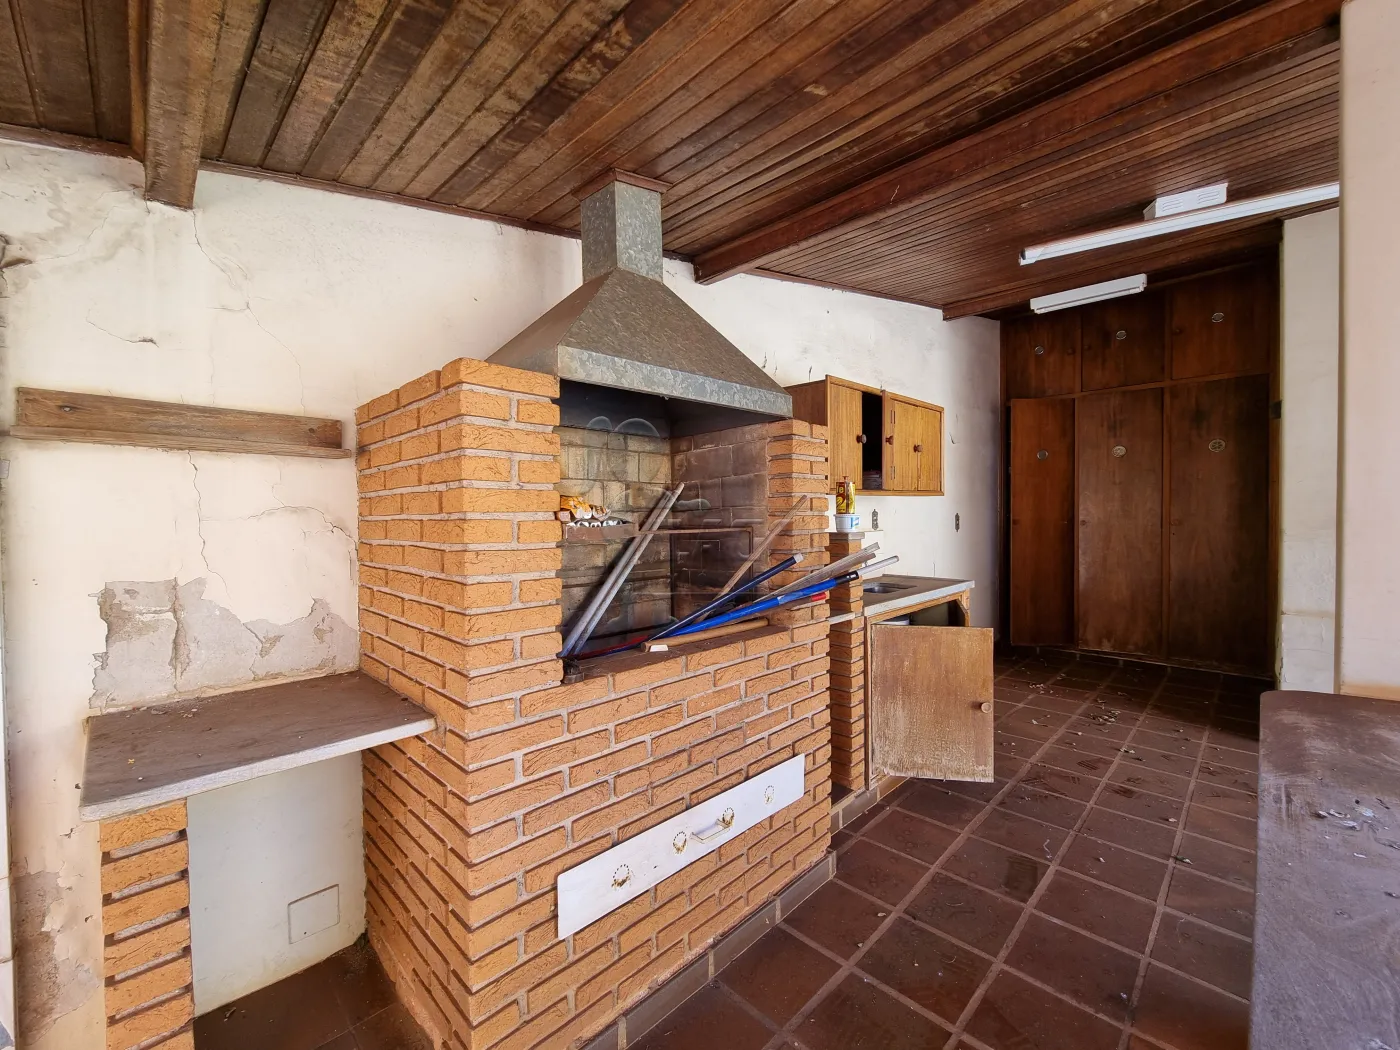 Comprar Casa / Padrão em Ribeirão Preto R$ 580.000,00 - Foto 30